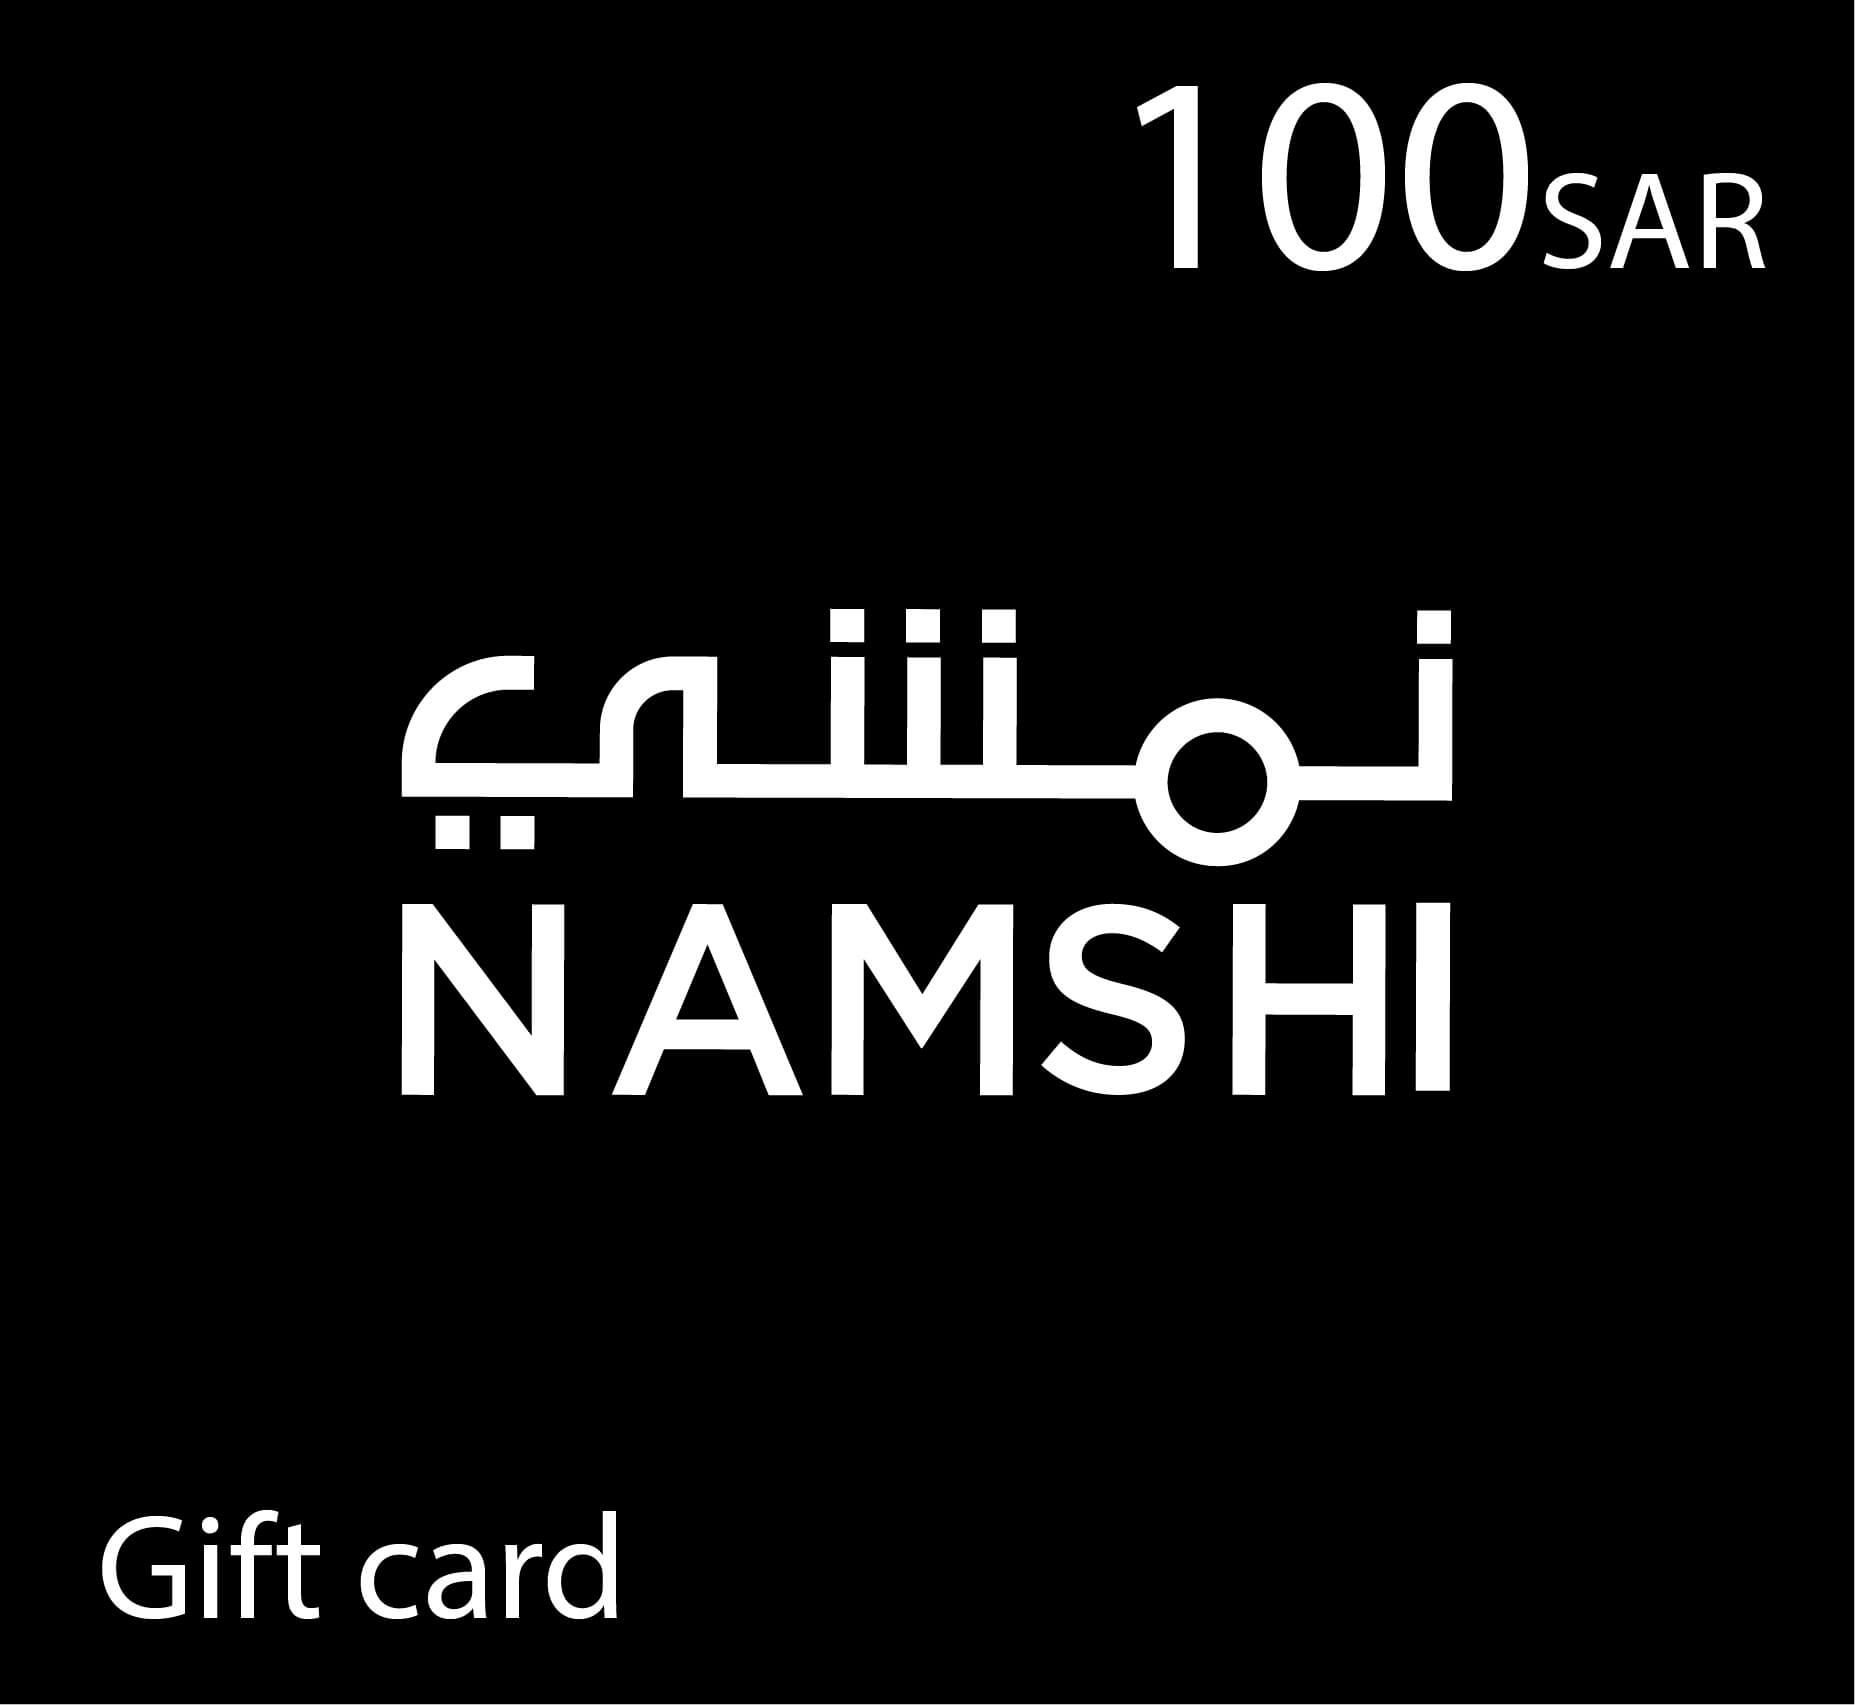 Namshi Gift Card - 100 SAR